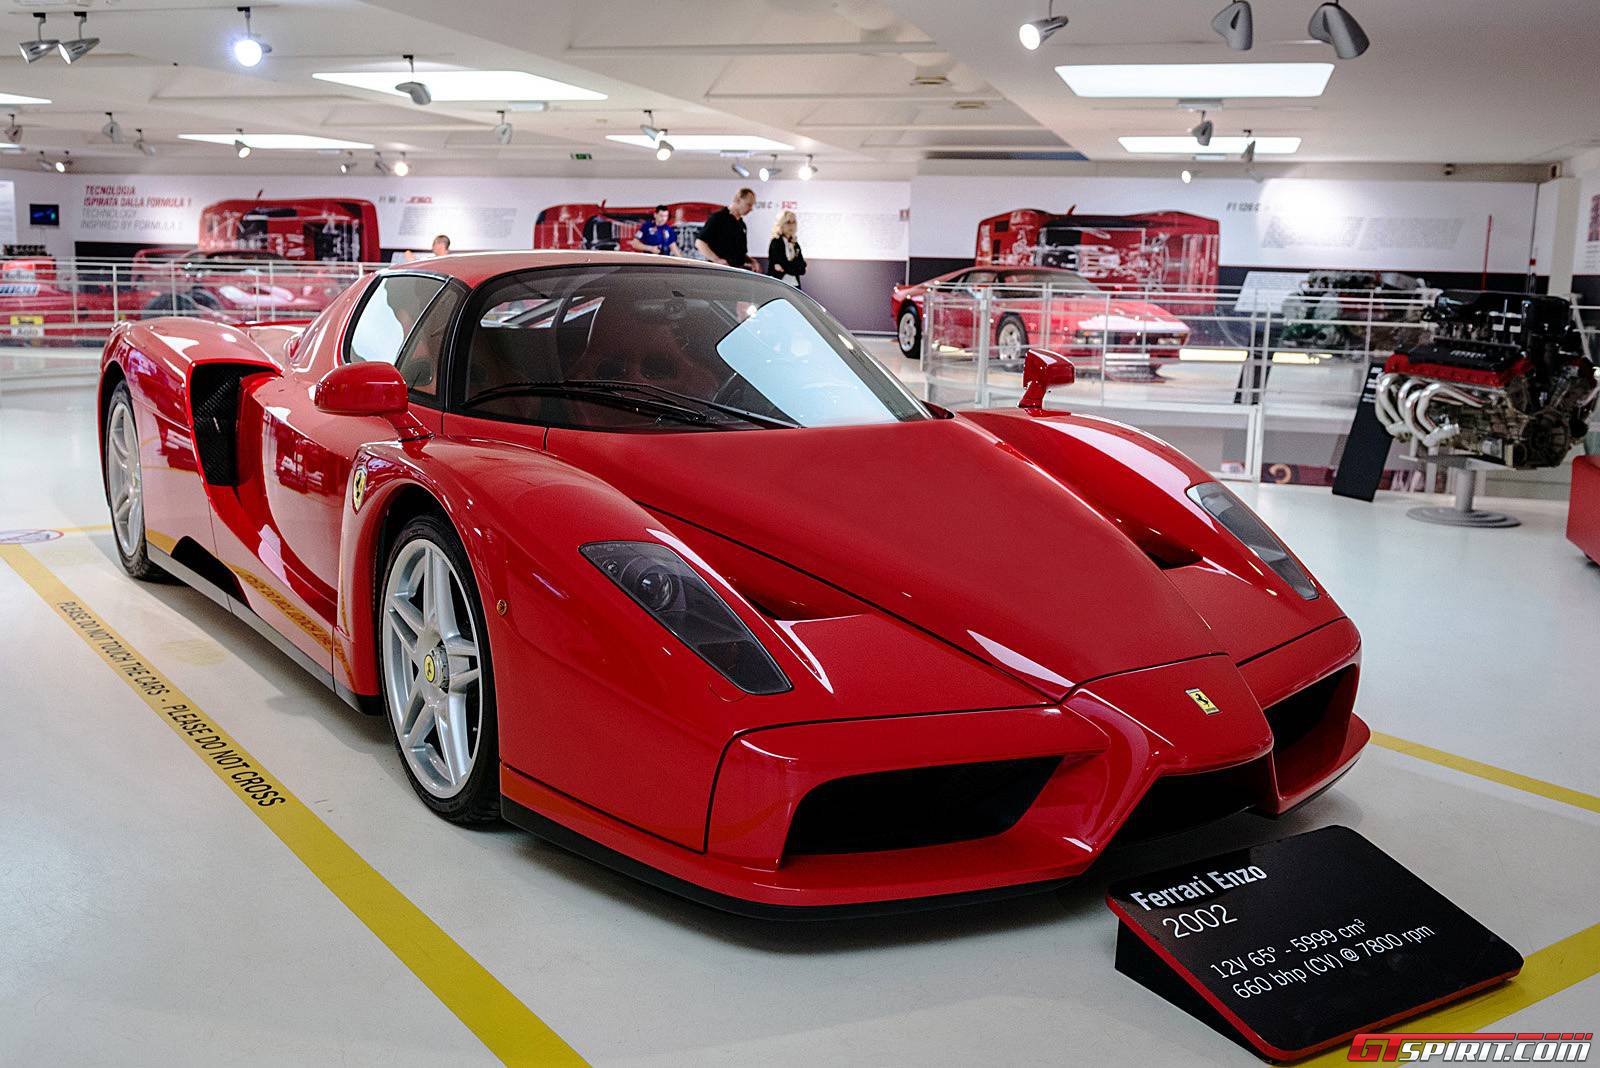 Choáng ngợp với Viện bảo tàng Ferrari tại Ý 3